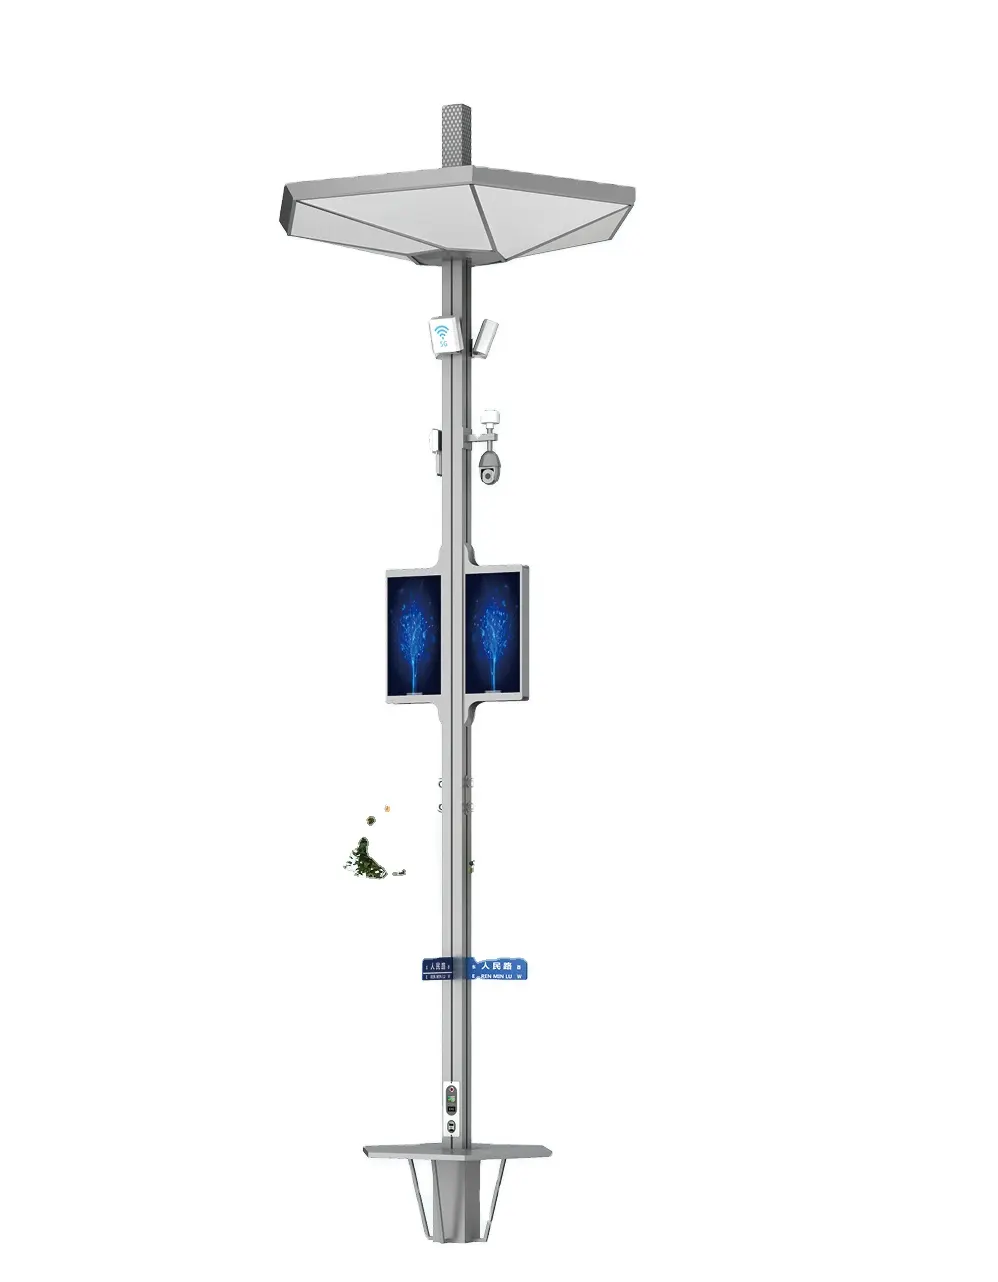 Weclouds iot умный осветительный столб для умного города с камерой видеонаблюдения, зарядка, светодиодный экран, Wi-Fi ap